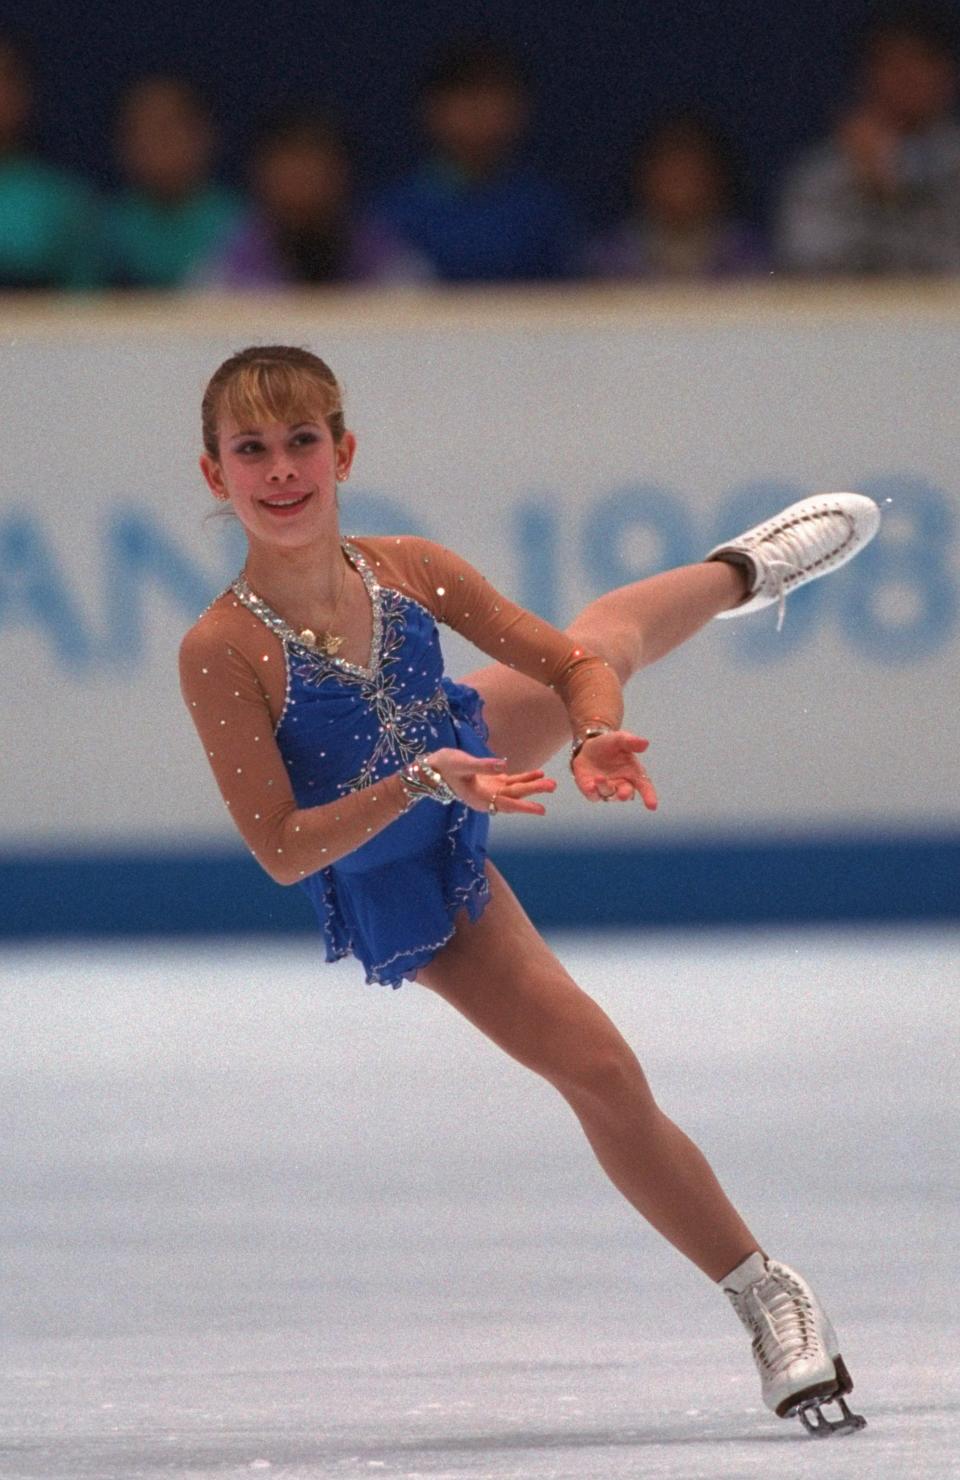 Gold medalist Tara Lipinski